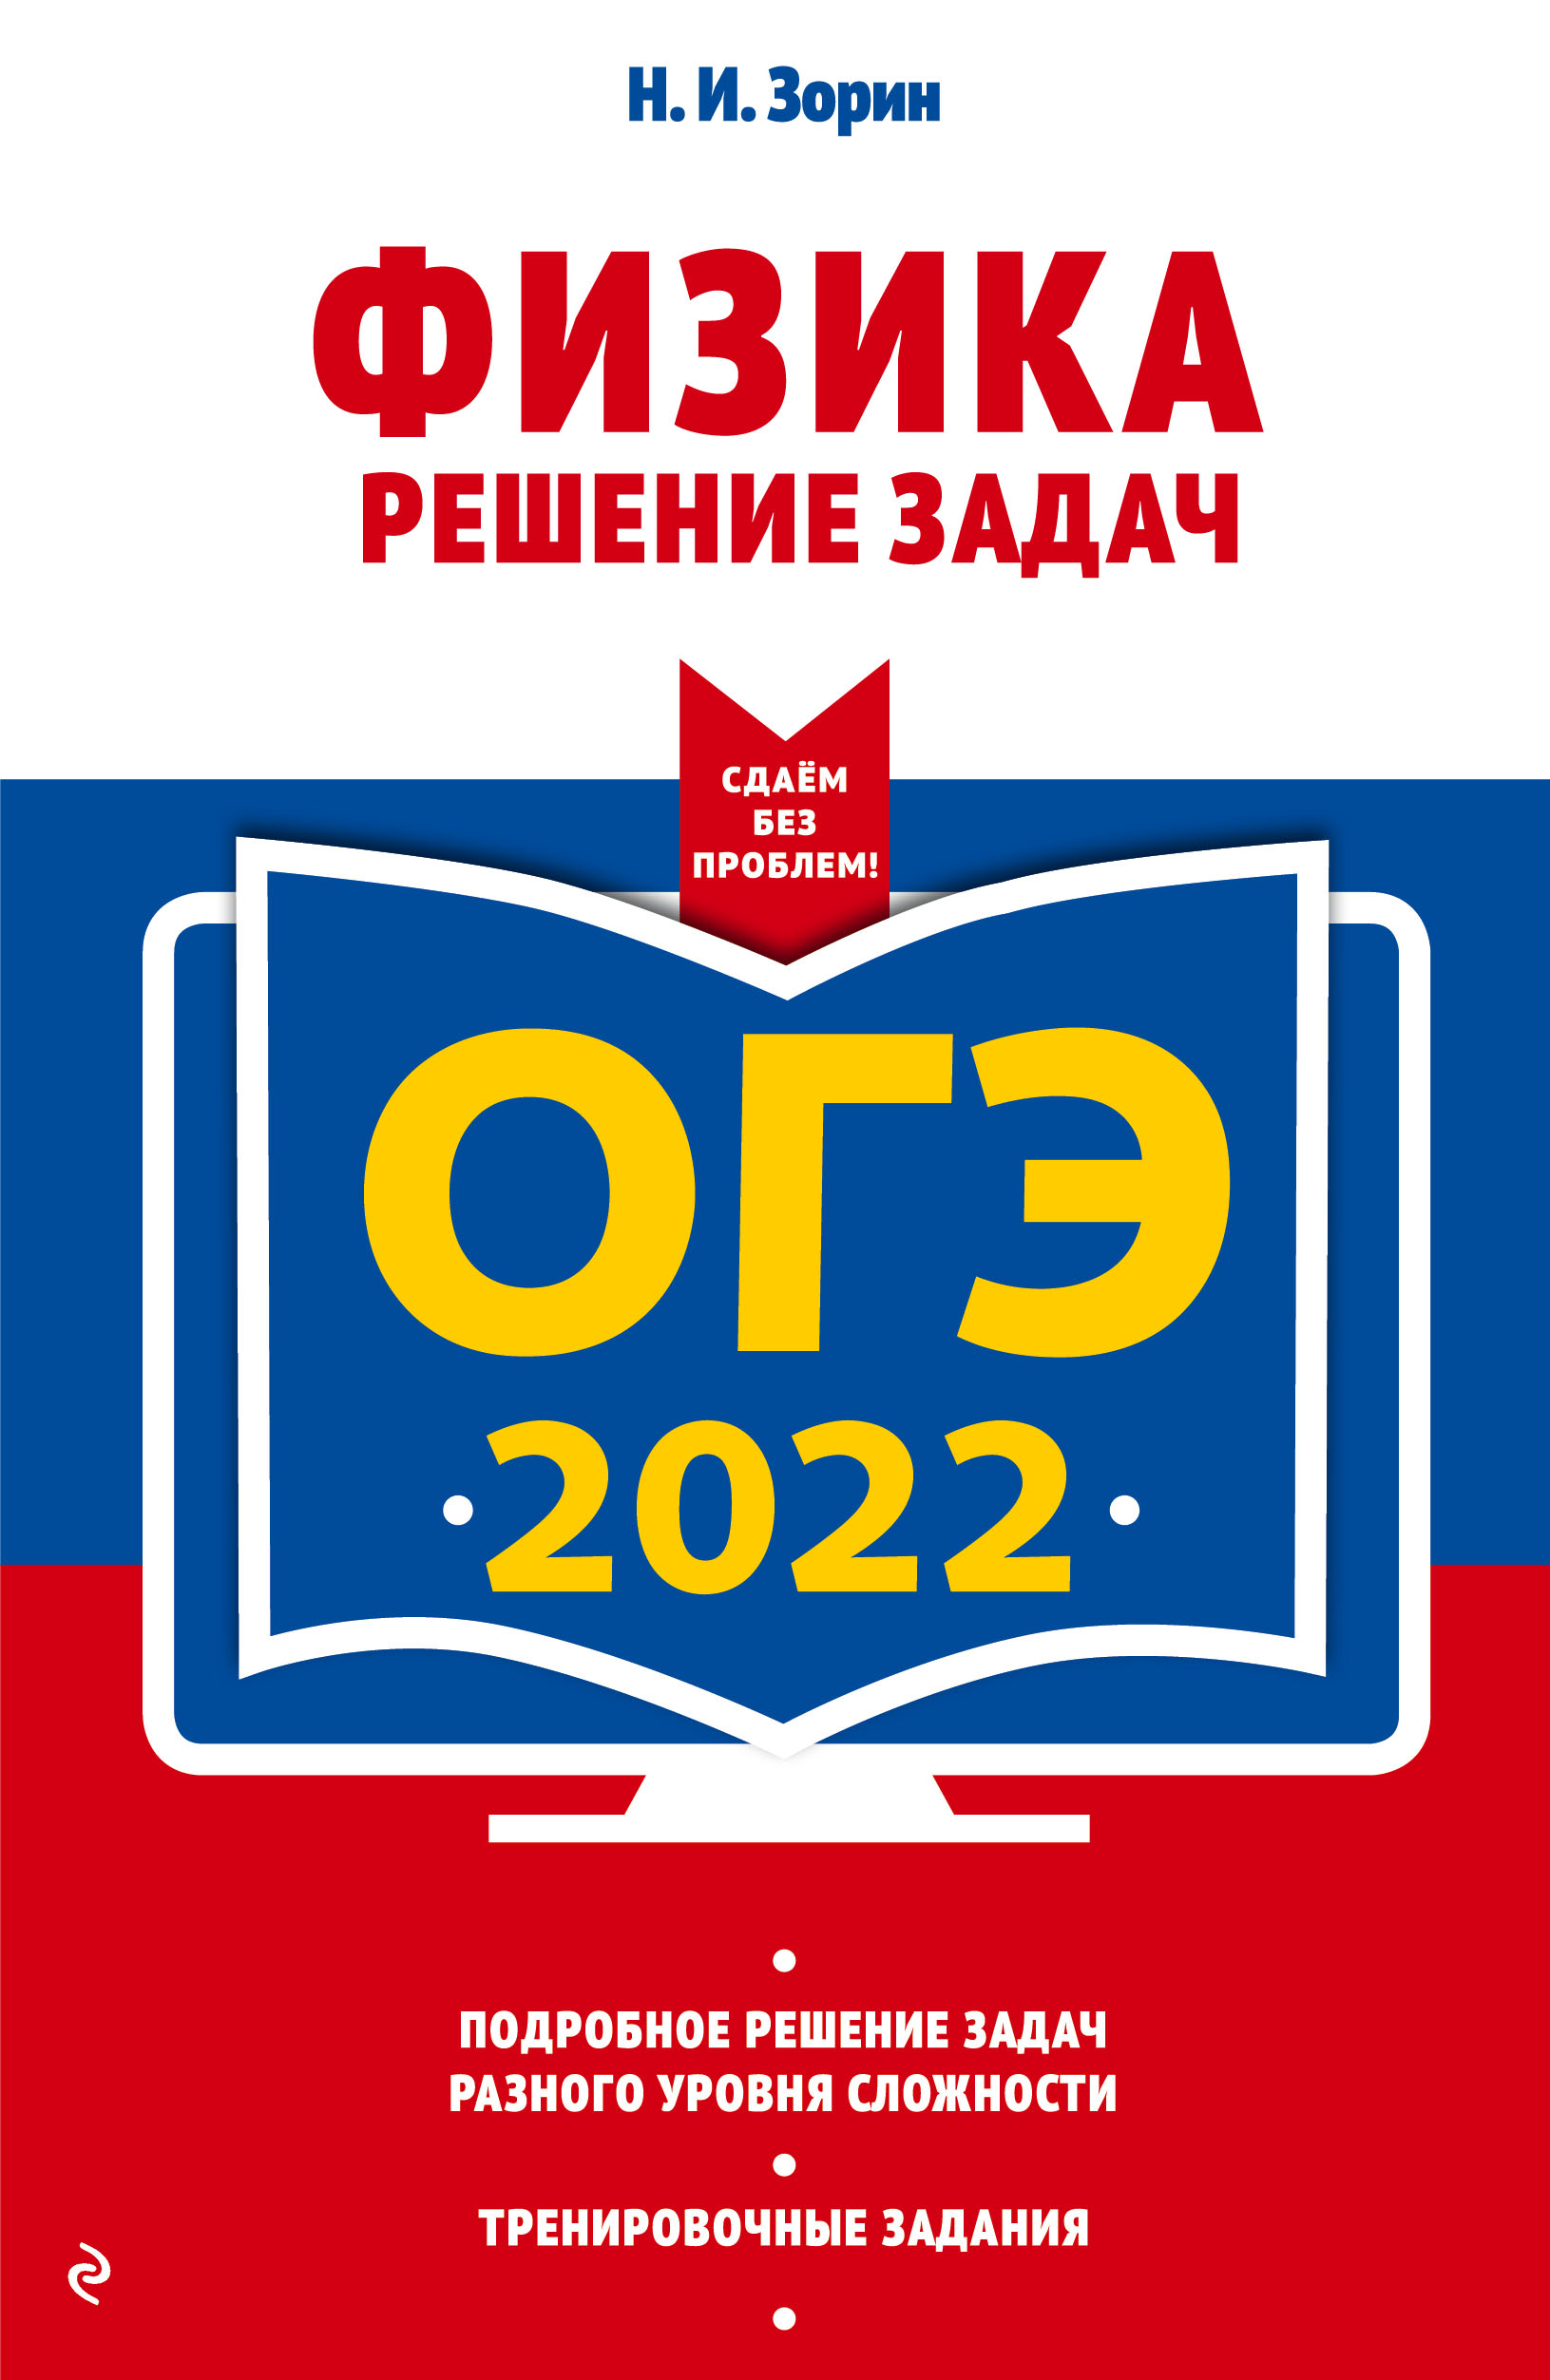  .. -2022. .   